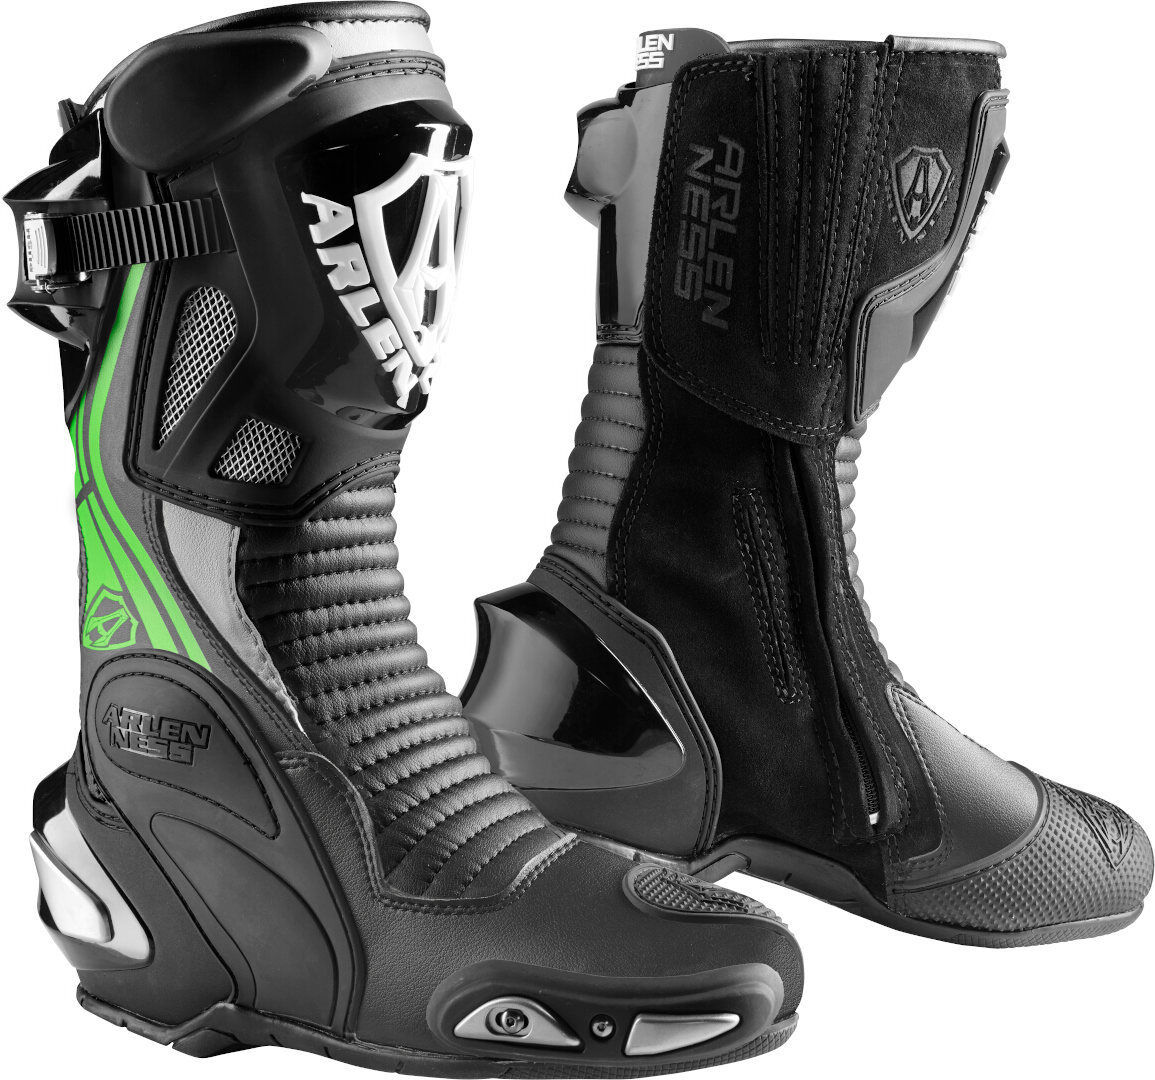 Arlen Ness Pro Shift 2 Motocyklové boty 39 Černá Bílá Zelená